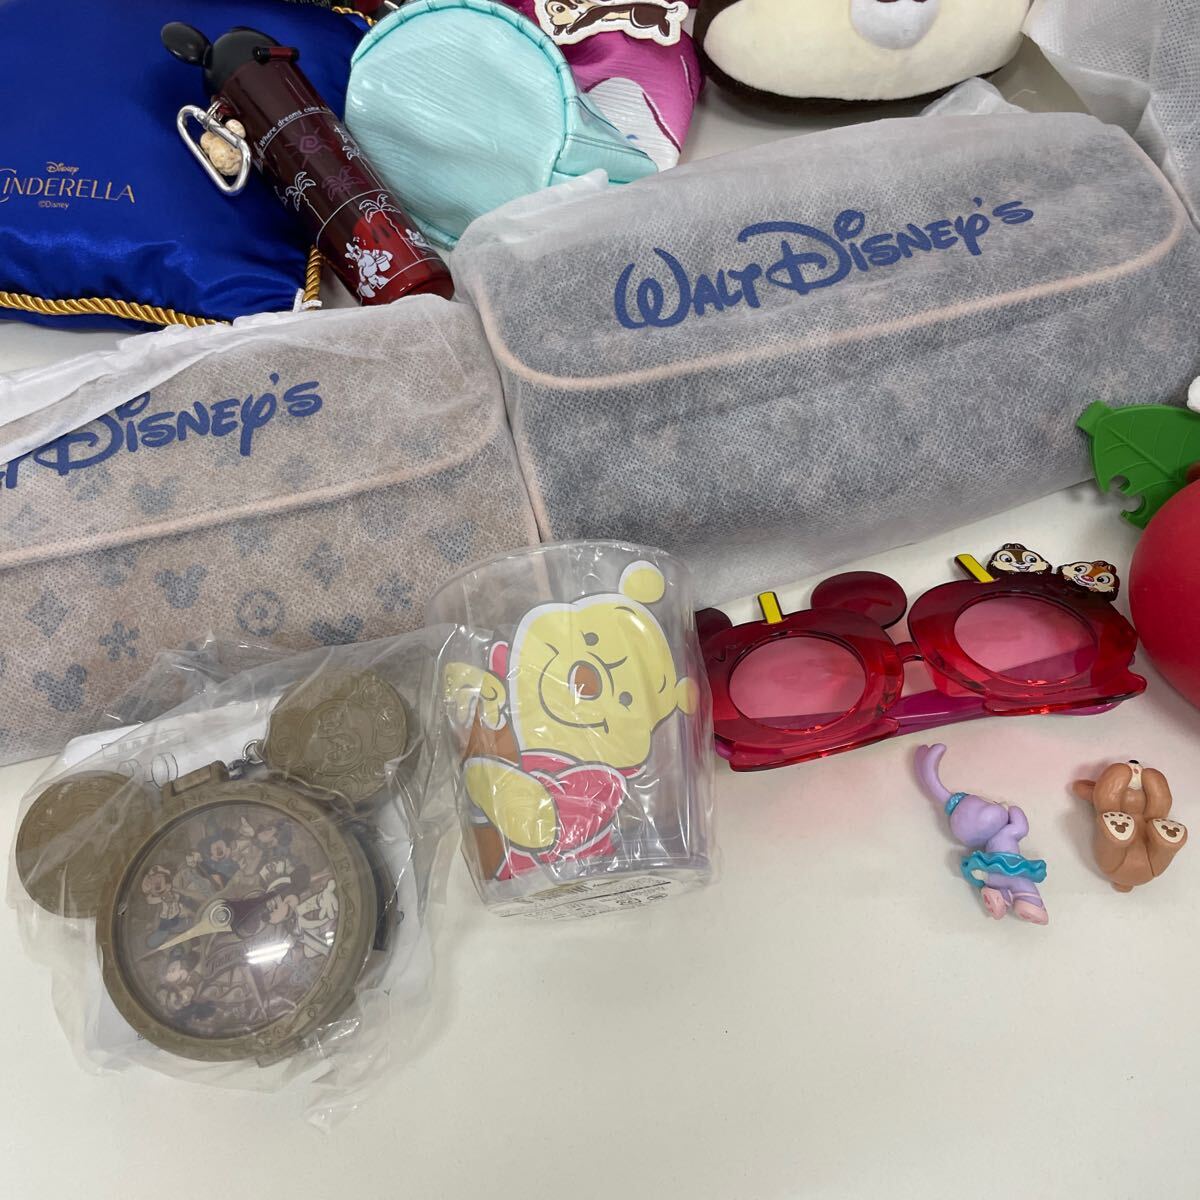  Disney товары комплект суммировать Duffy товары костюм сумка кошелек фигурка приз товары Disney магазин товар Disney др. 240519T07